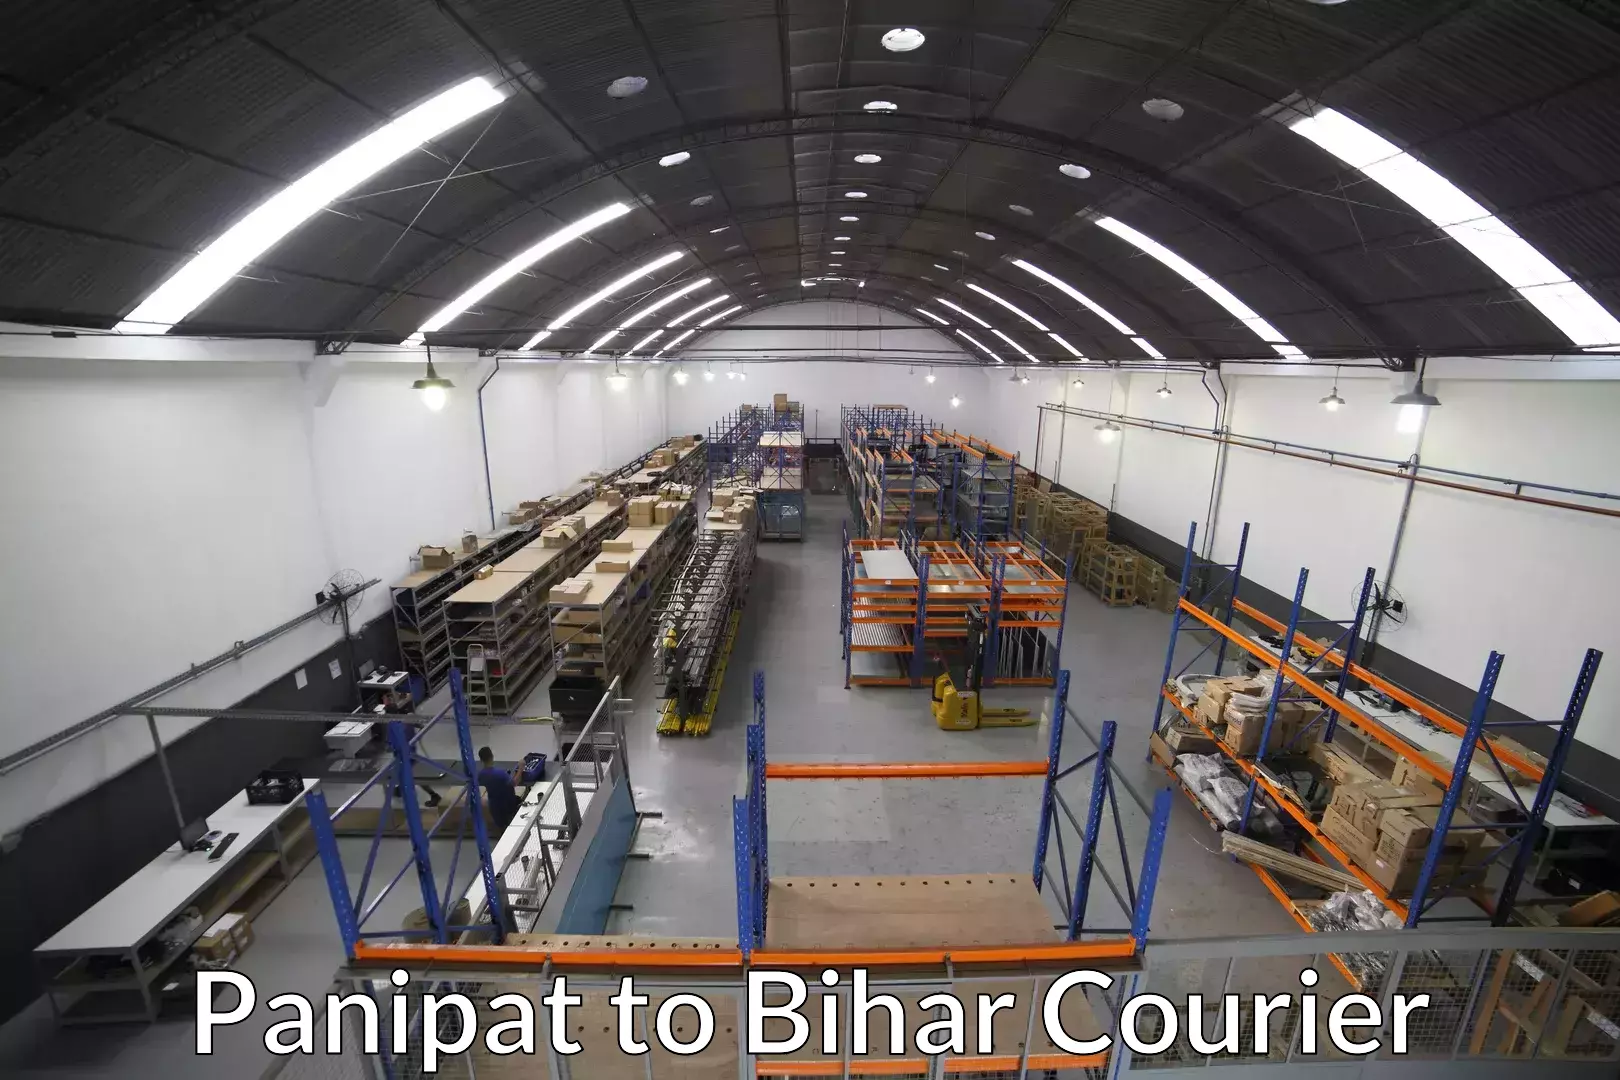 Furniture transport service Panipat to Bhorey